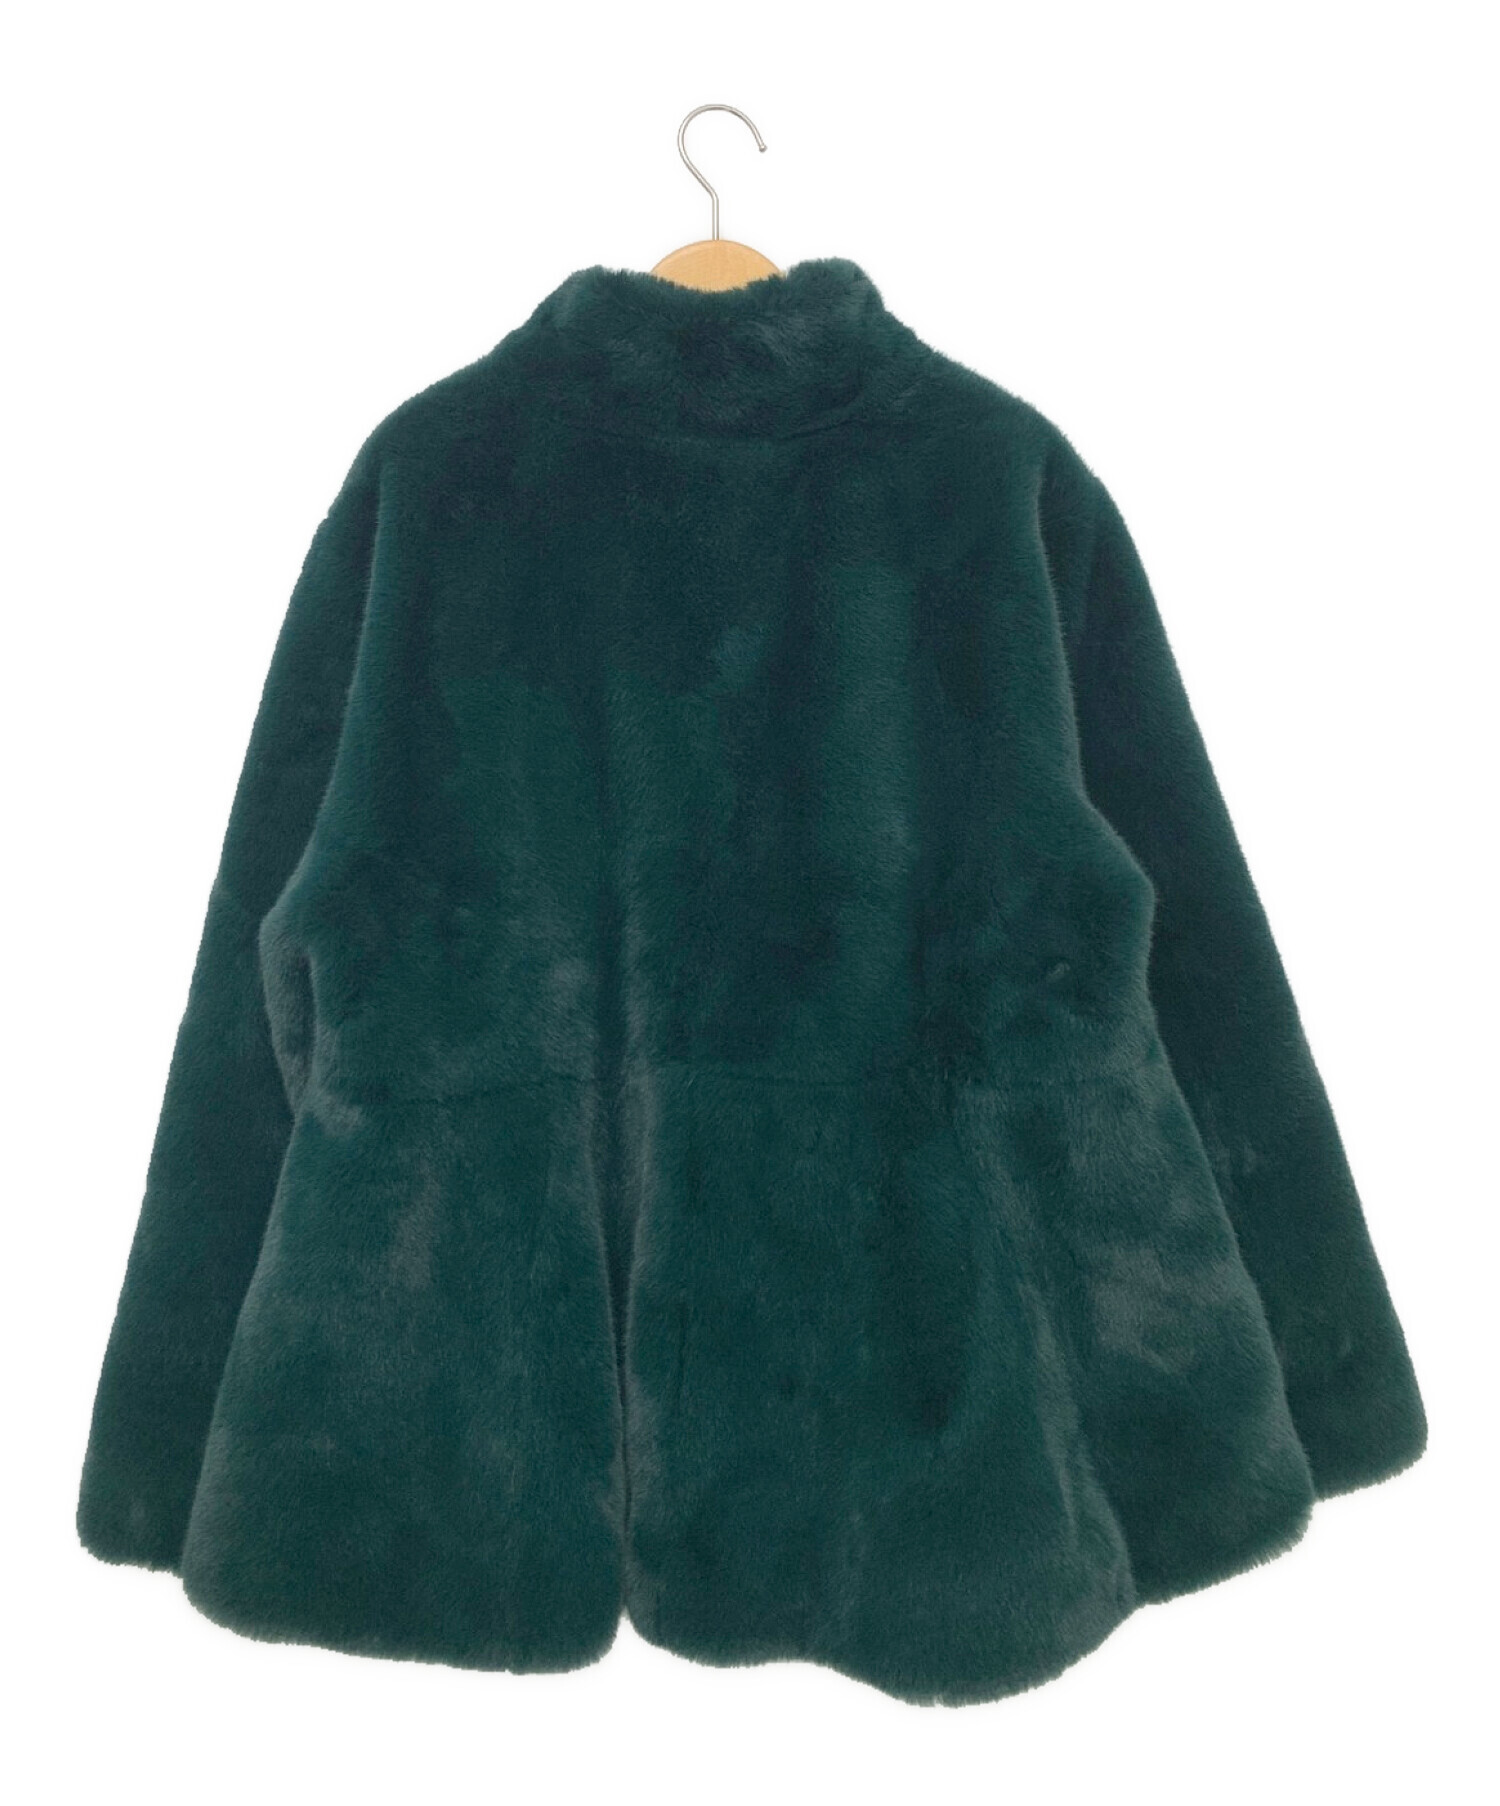 RANDEBOO (ランデブー) Melt fake fur coat グリーン サイズ:F